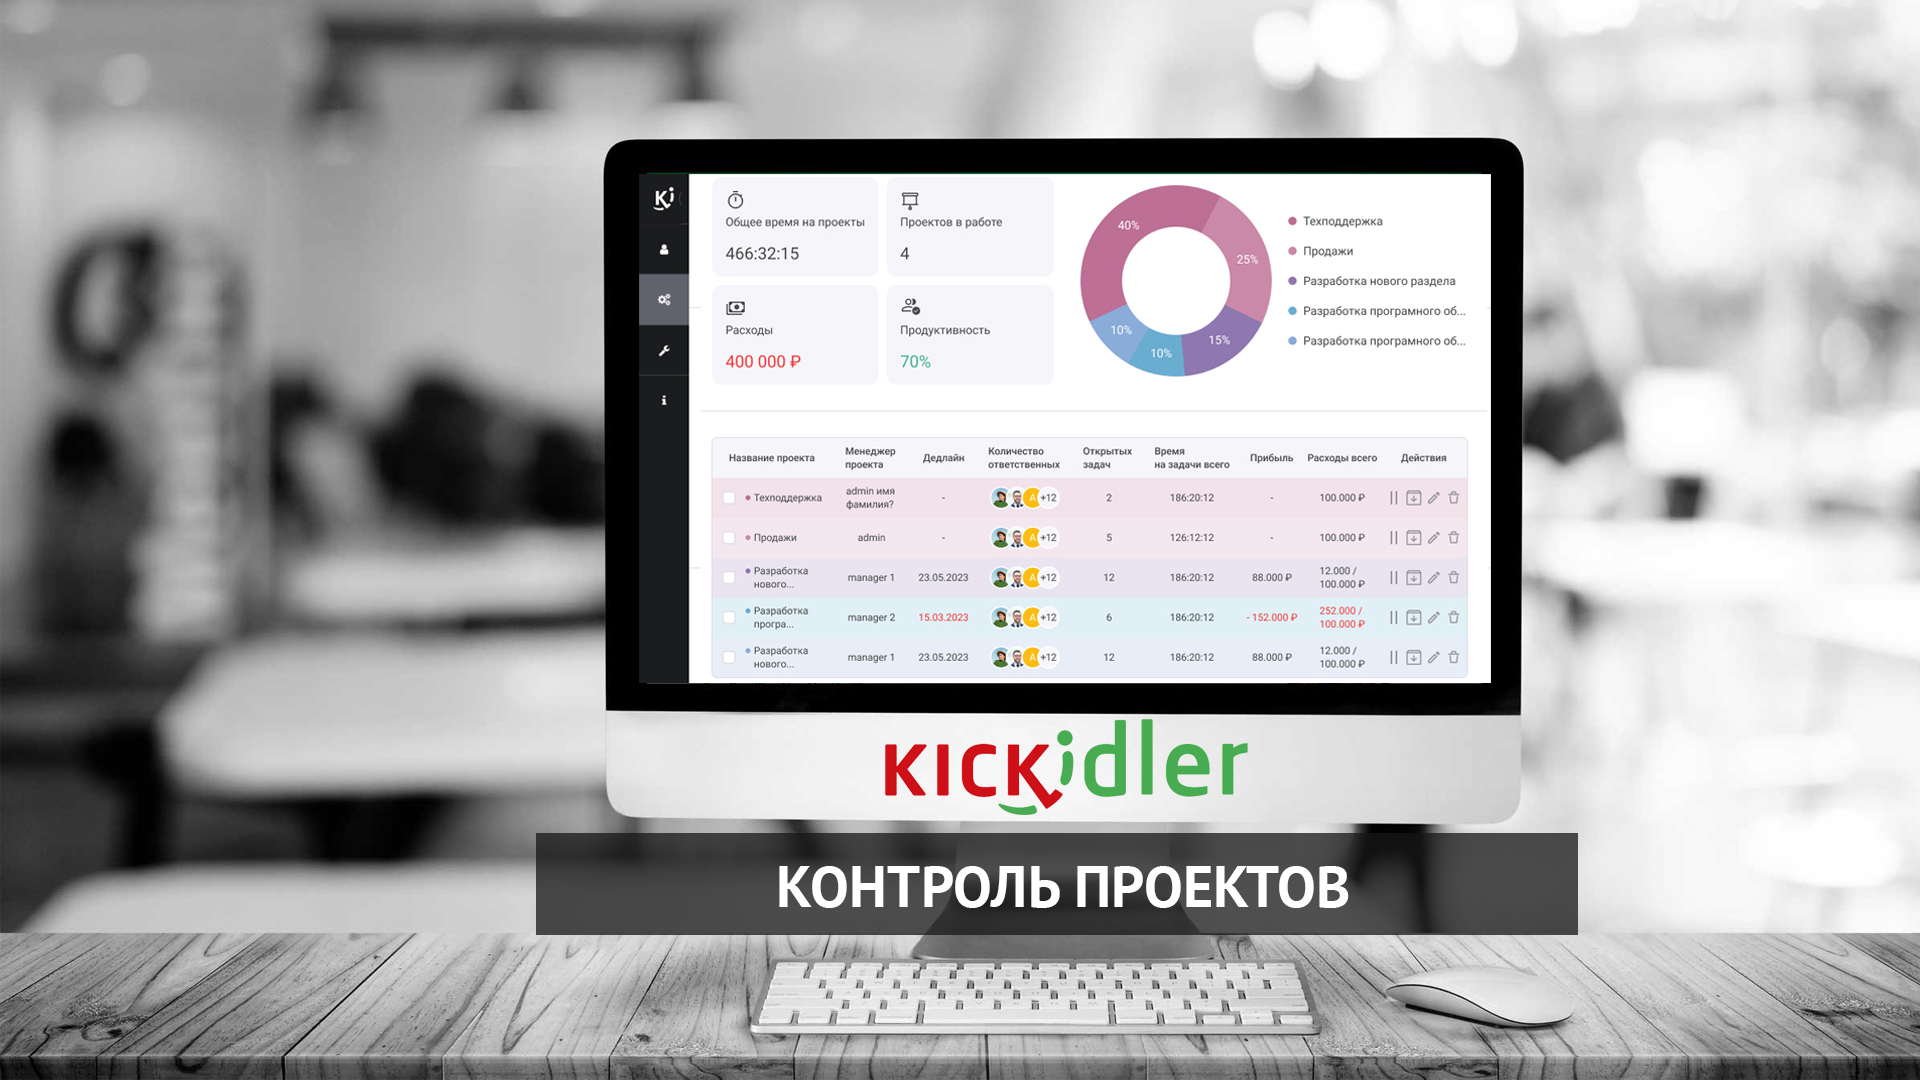 Обзор программы Kickidler